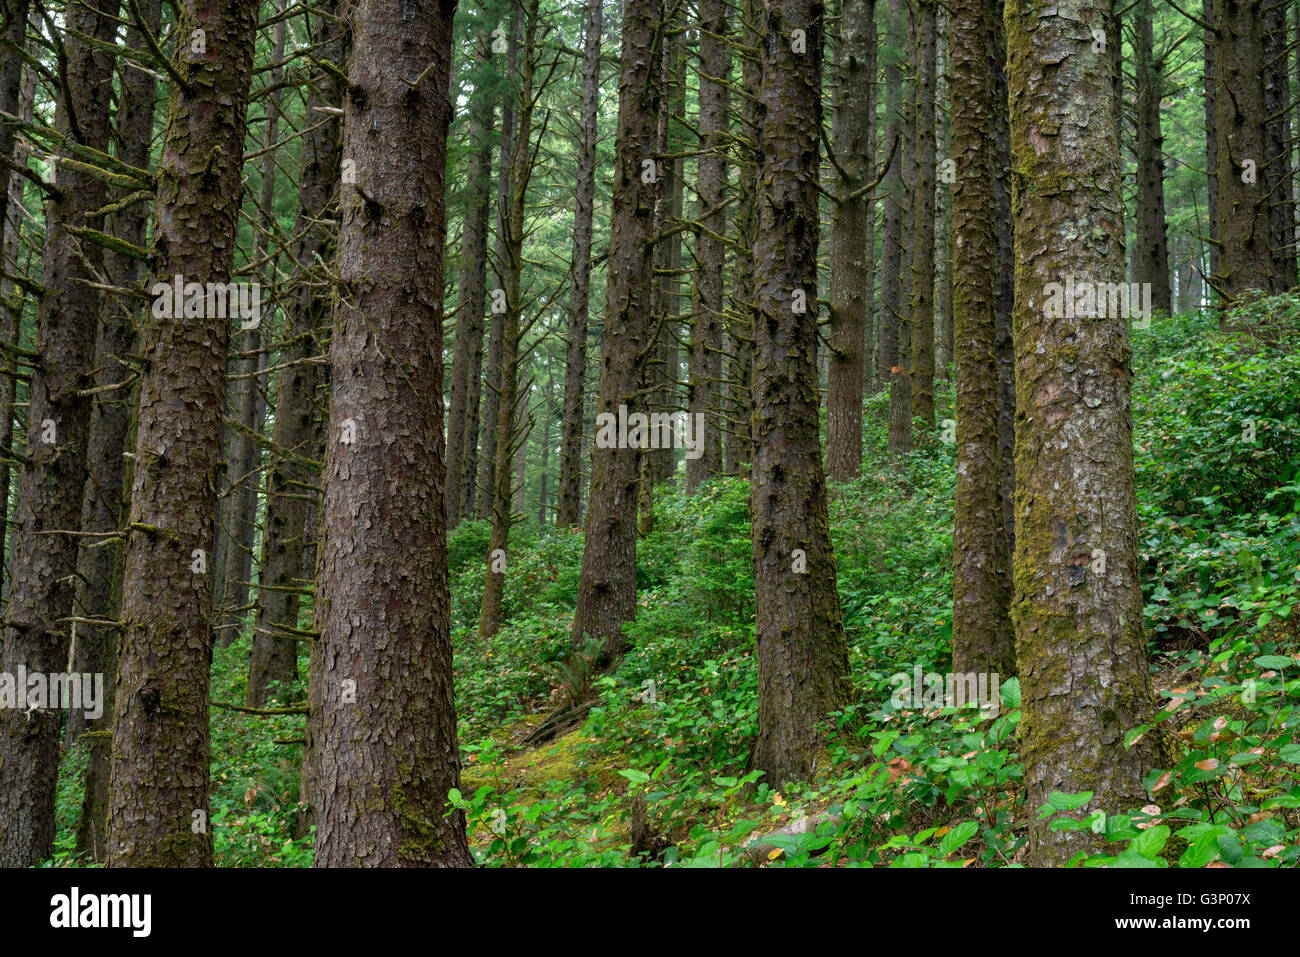 Stati Uniti d'America, Oregon, Siuslaw National Forest. Cape Perpetua Scenic Area, foresta pluviale costiera di Sitka Spruce con sottobosco di salal. Foto Stock